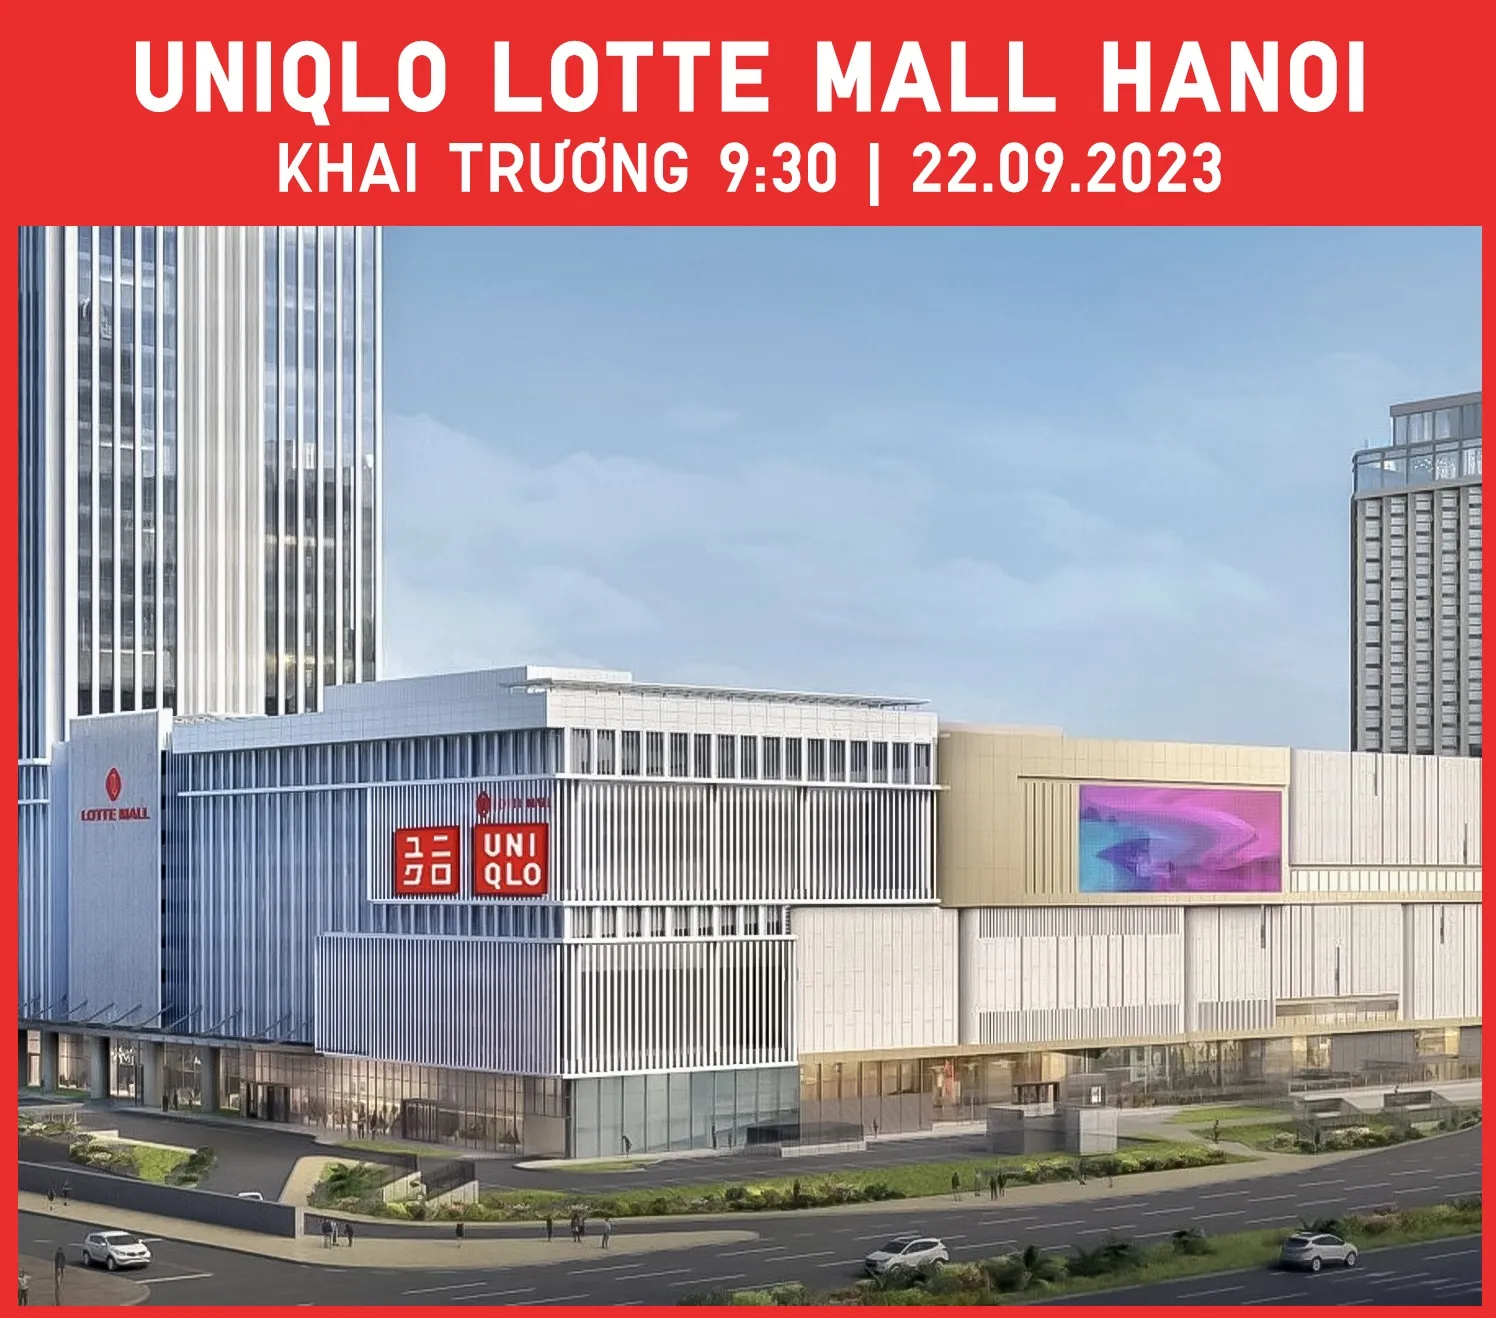 UNIQLO công bố khai trương cửa hàng UNIQLO LOTTE MALL HANOI lúc 9 giờ 30 sáng ngày 22 tháng 09